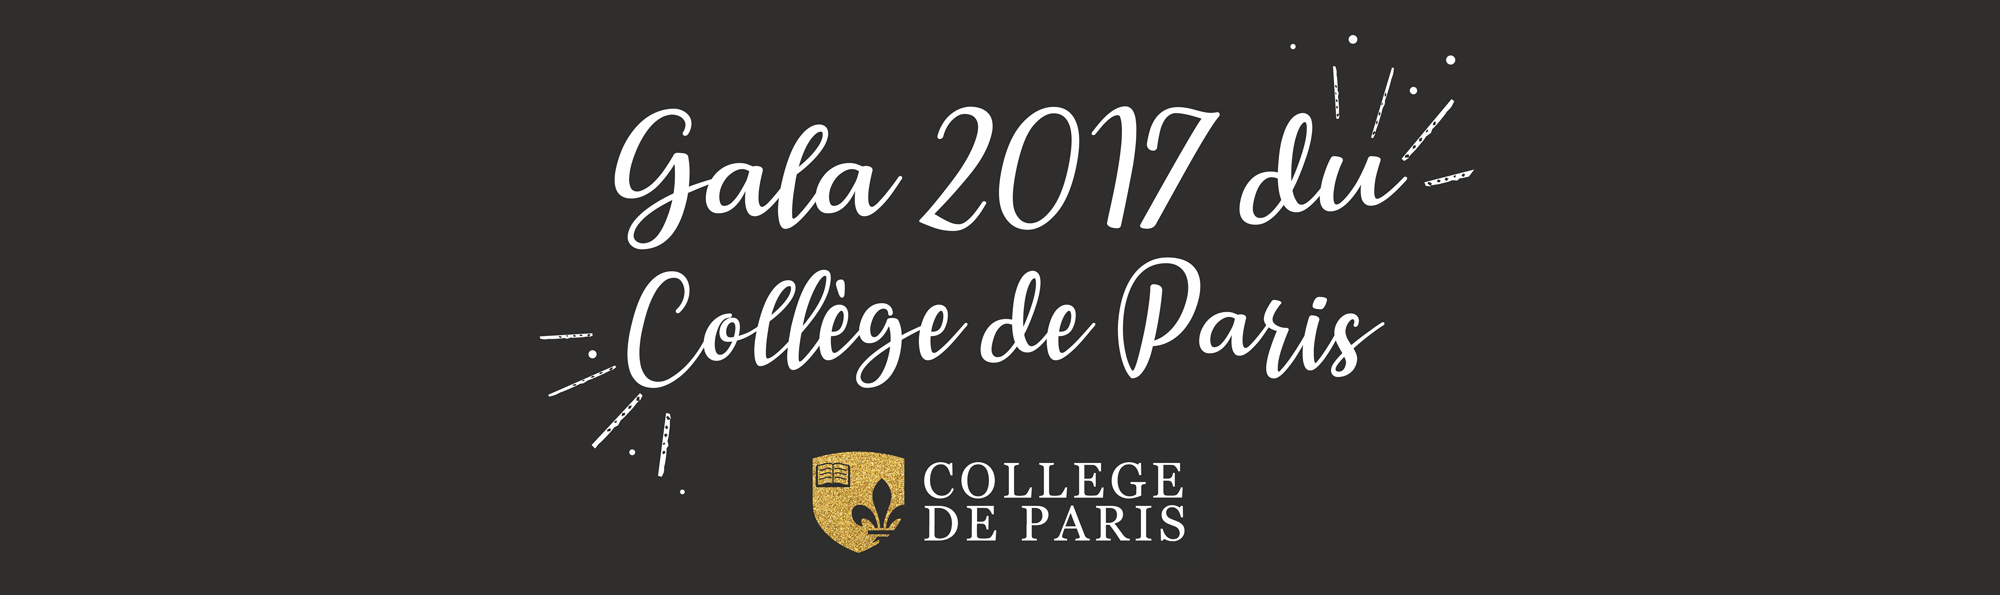 gala 2017 du college de paris